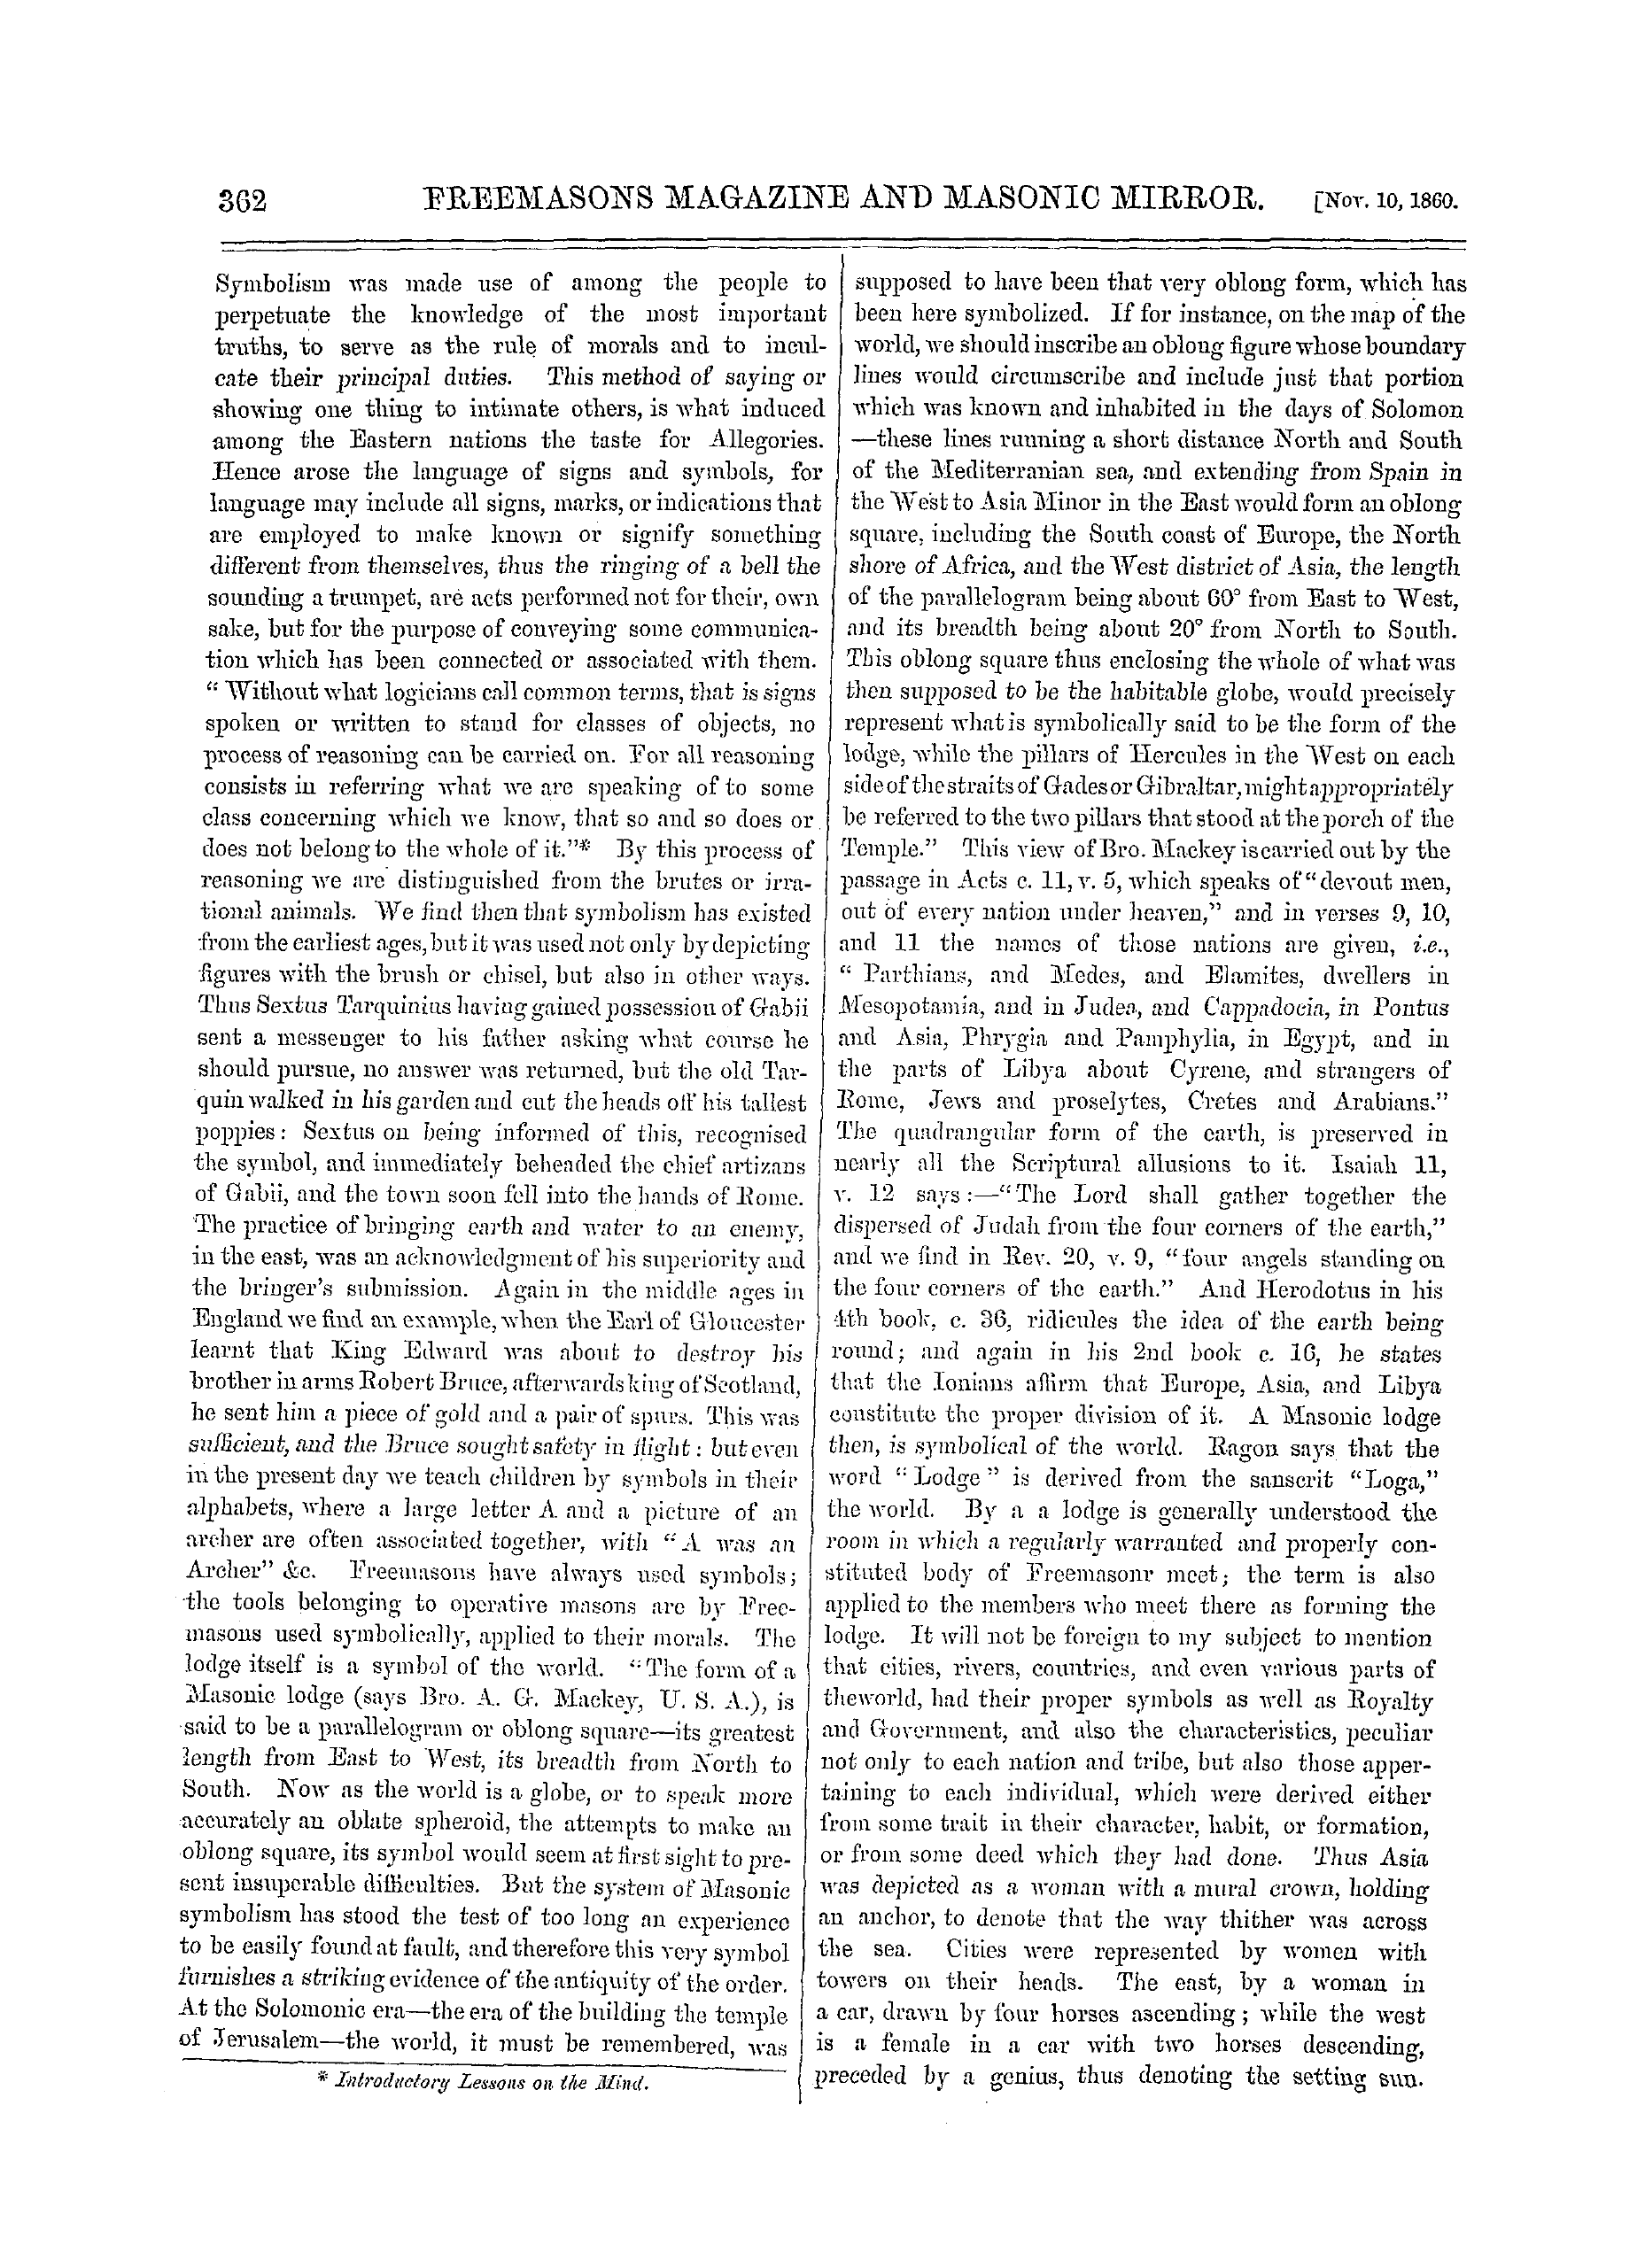 The Freemasons' Monthly Magazine: 1860-11-10 - Masonic Symbolism